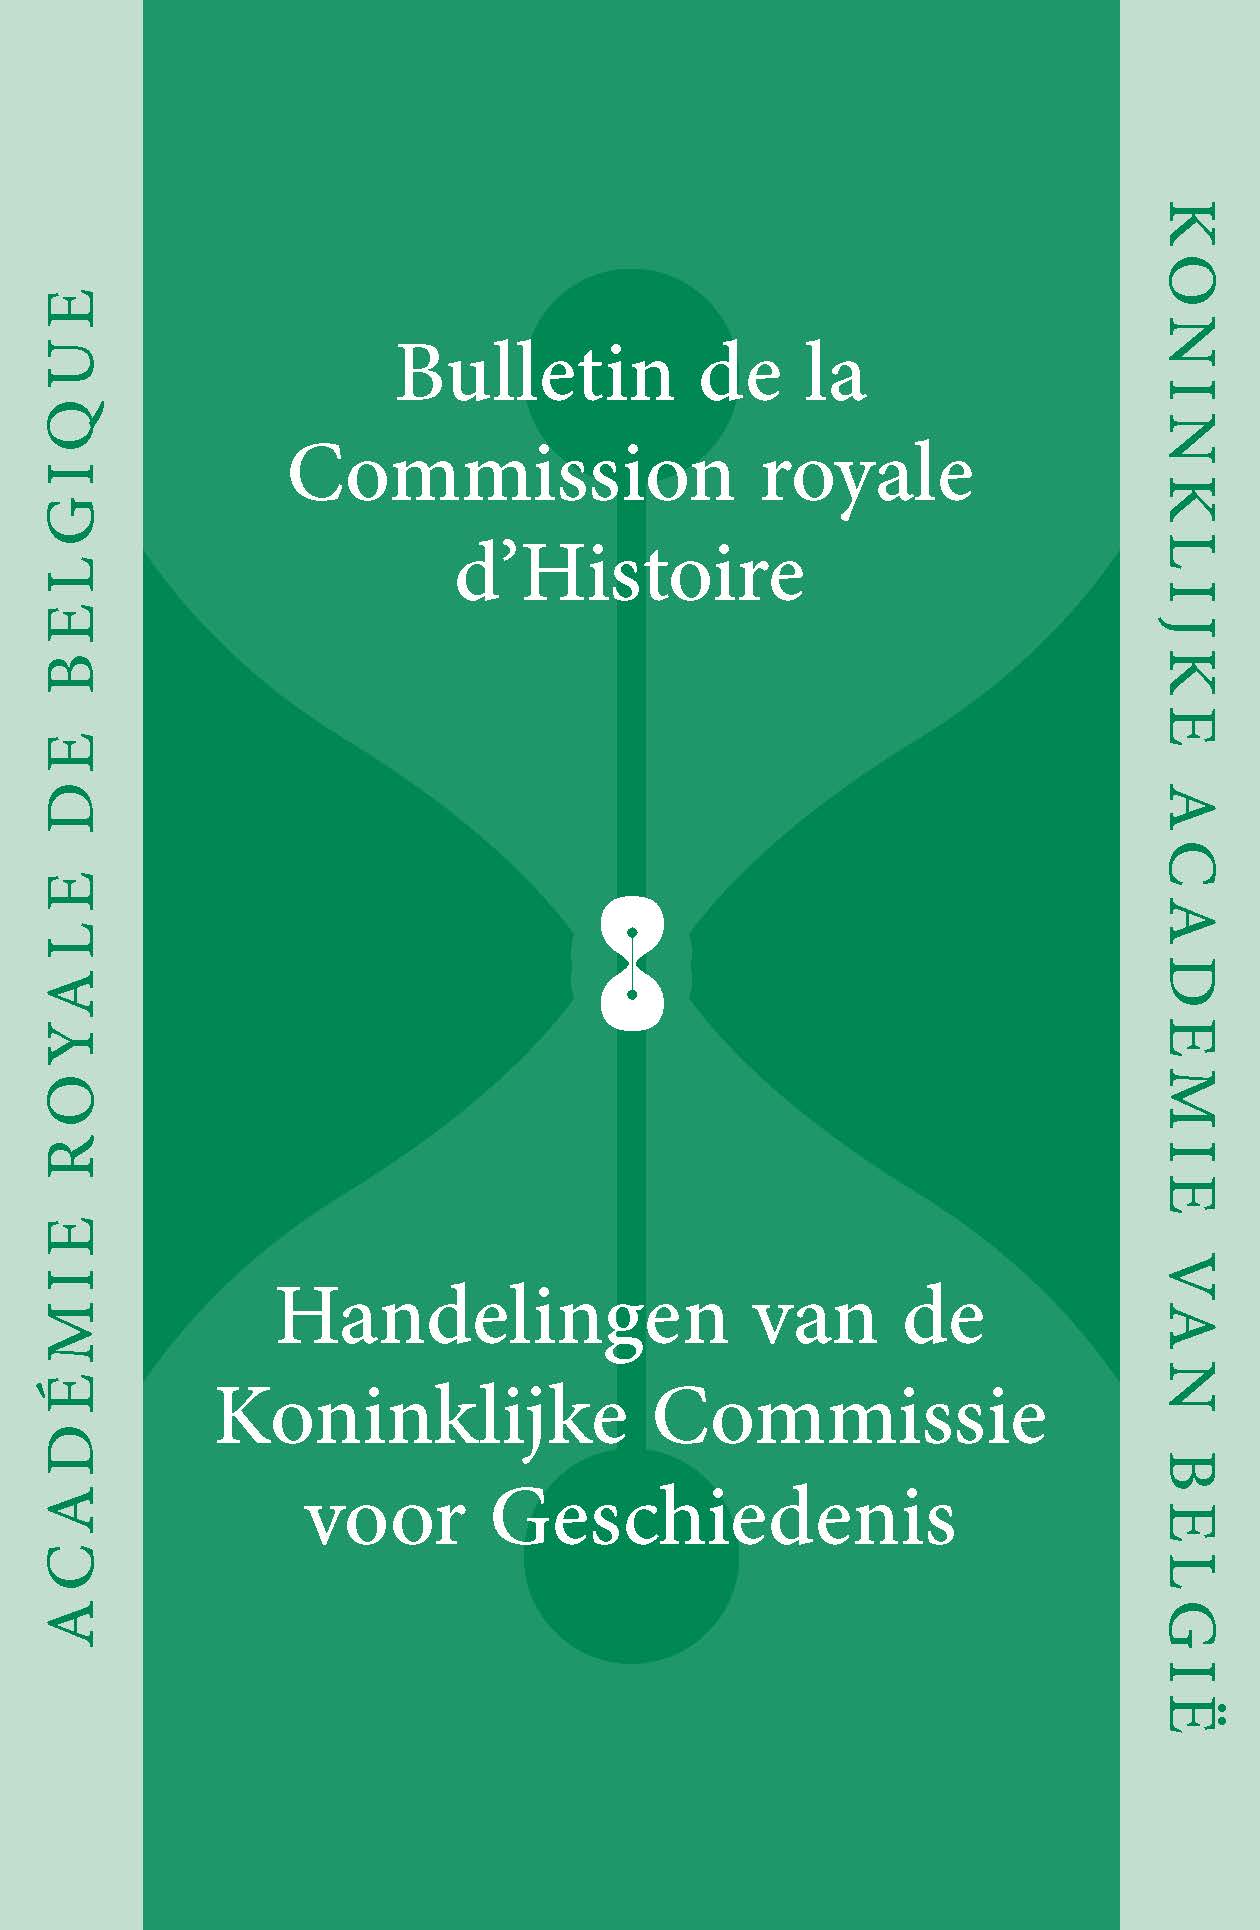 HANDELINGEN VAN DE KONINKLIJKE COMMISSIE VOOR GESCHIEDENIS/BULLETIN, vol. 181, 2015 (kcg)